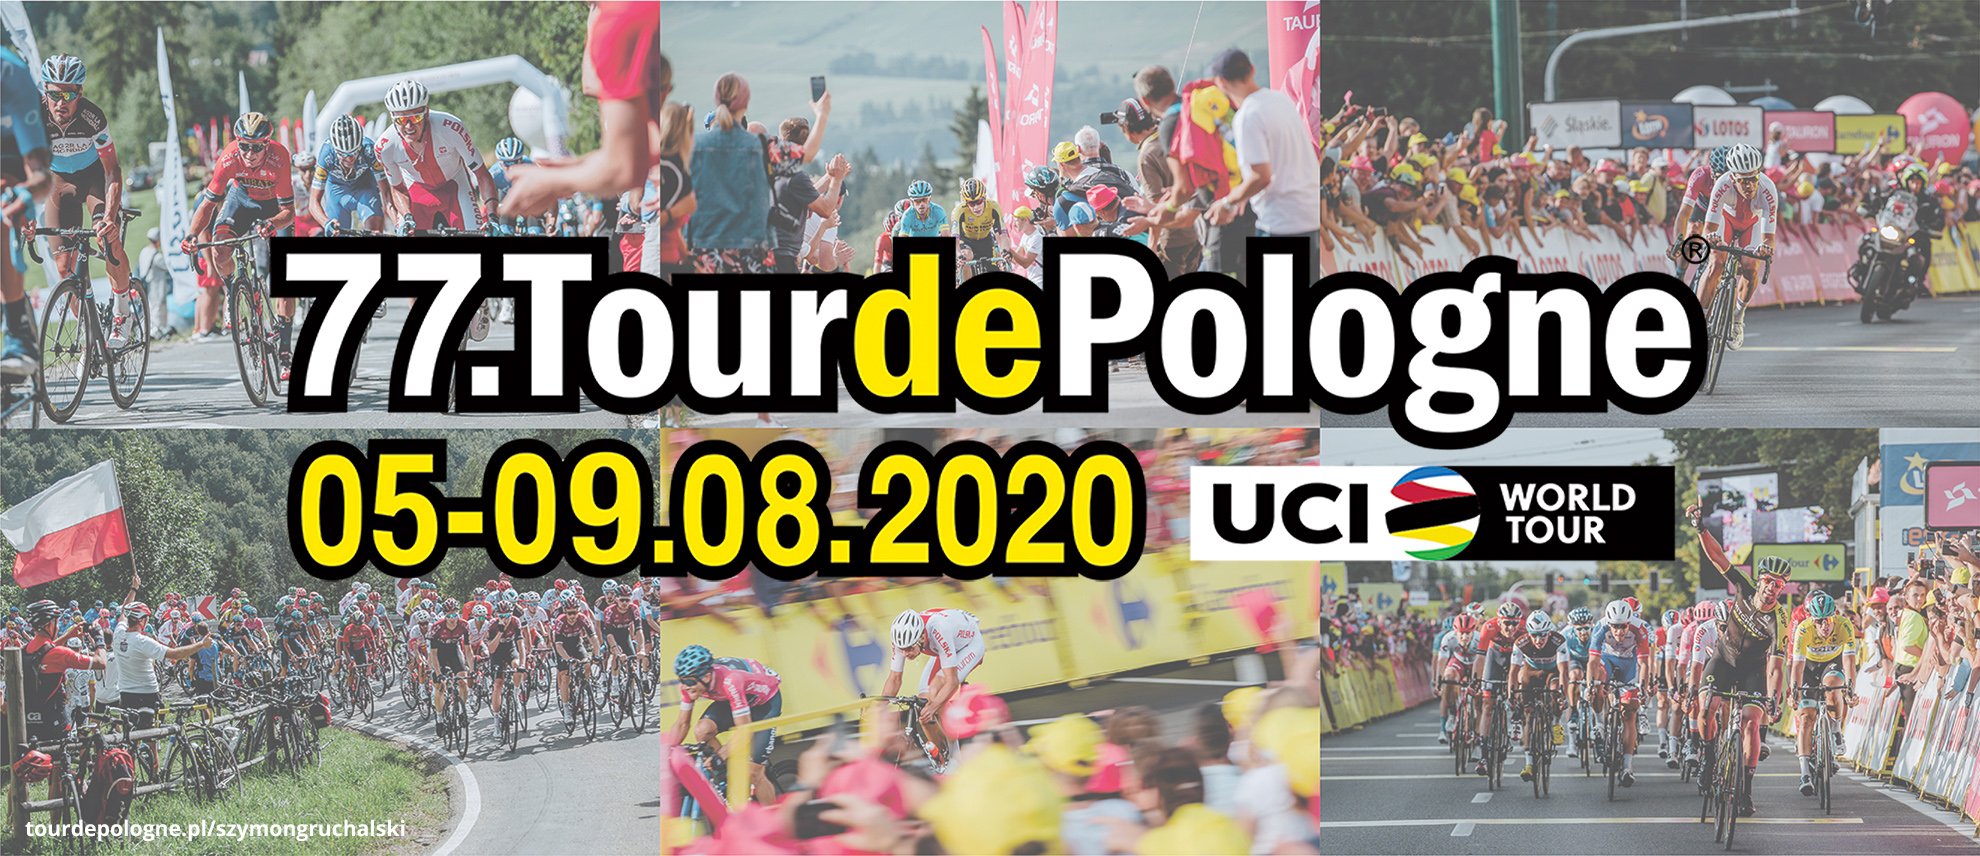 DRUTEX ist offizieller Sponsor der Tour de Pologne